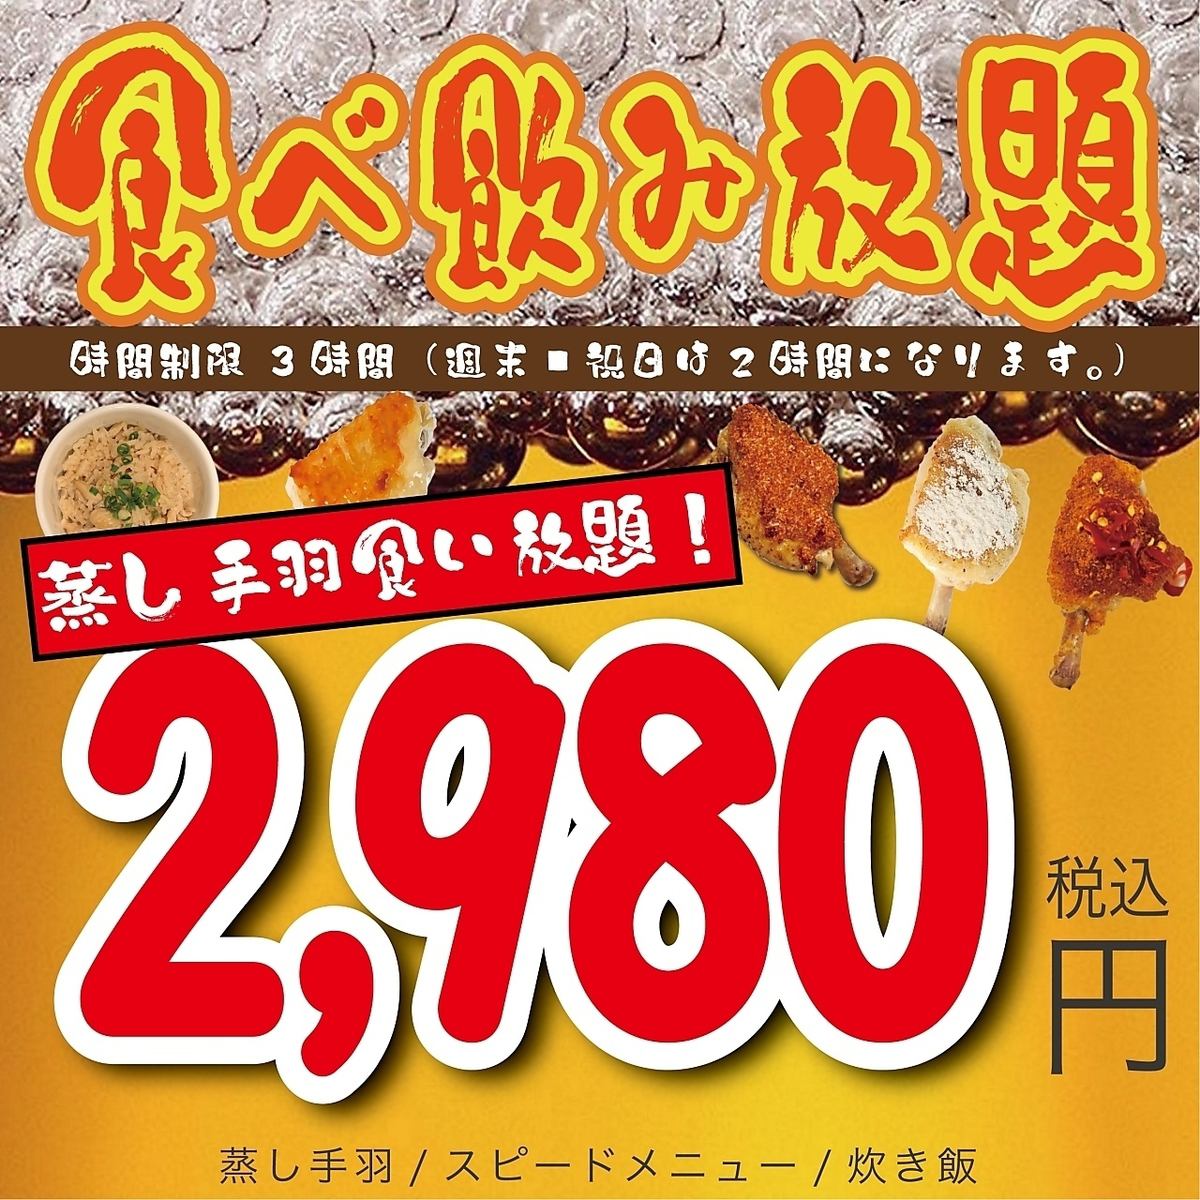 包括蒸雞翅、餃子和單點菜餚在內的無限暢飲套餐2,980日元起！